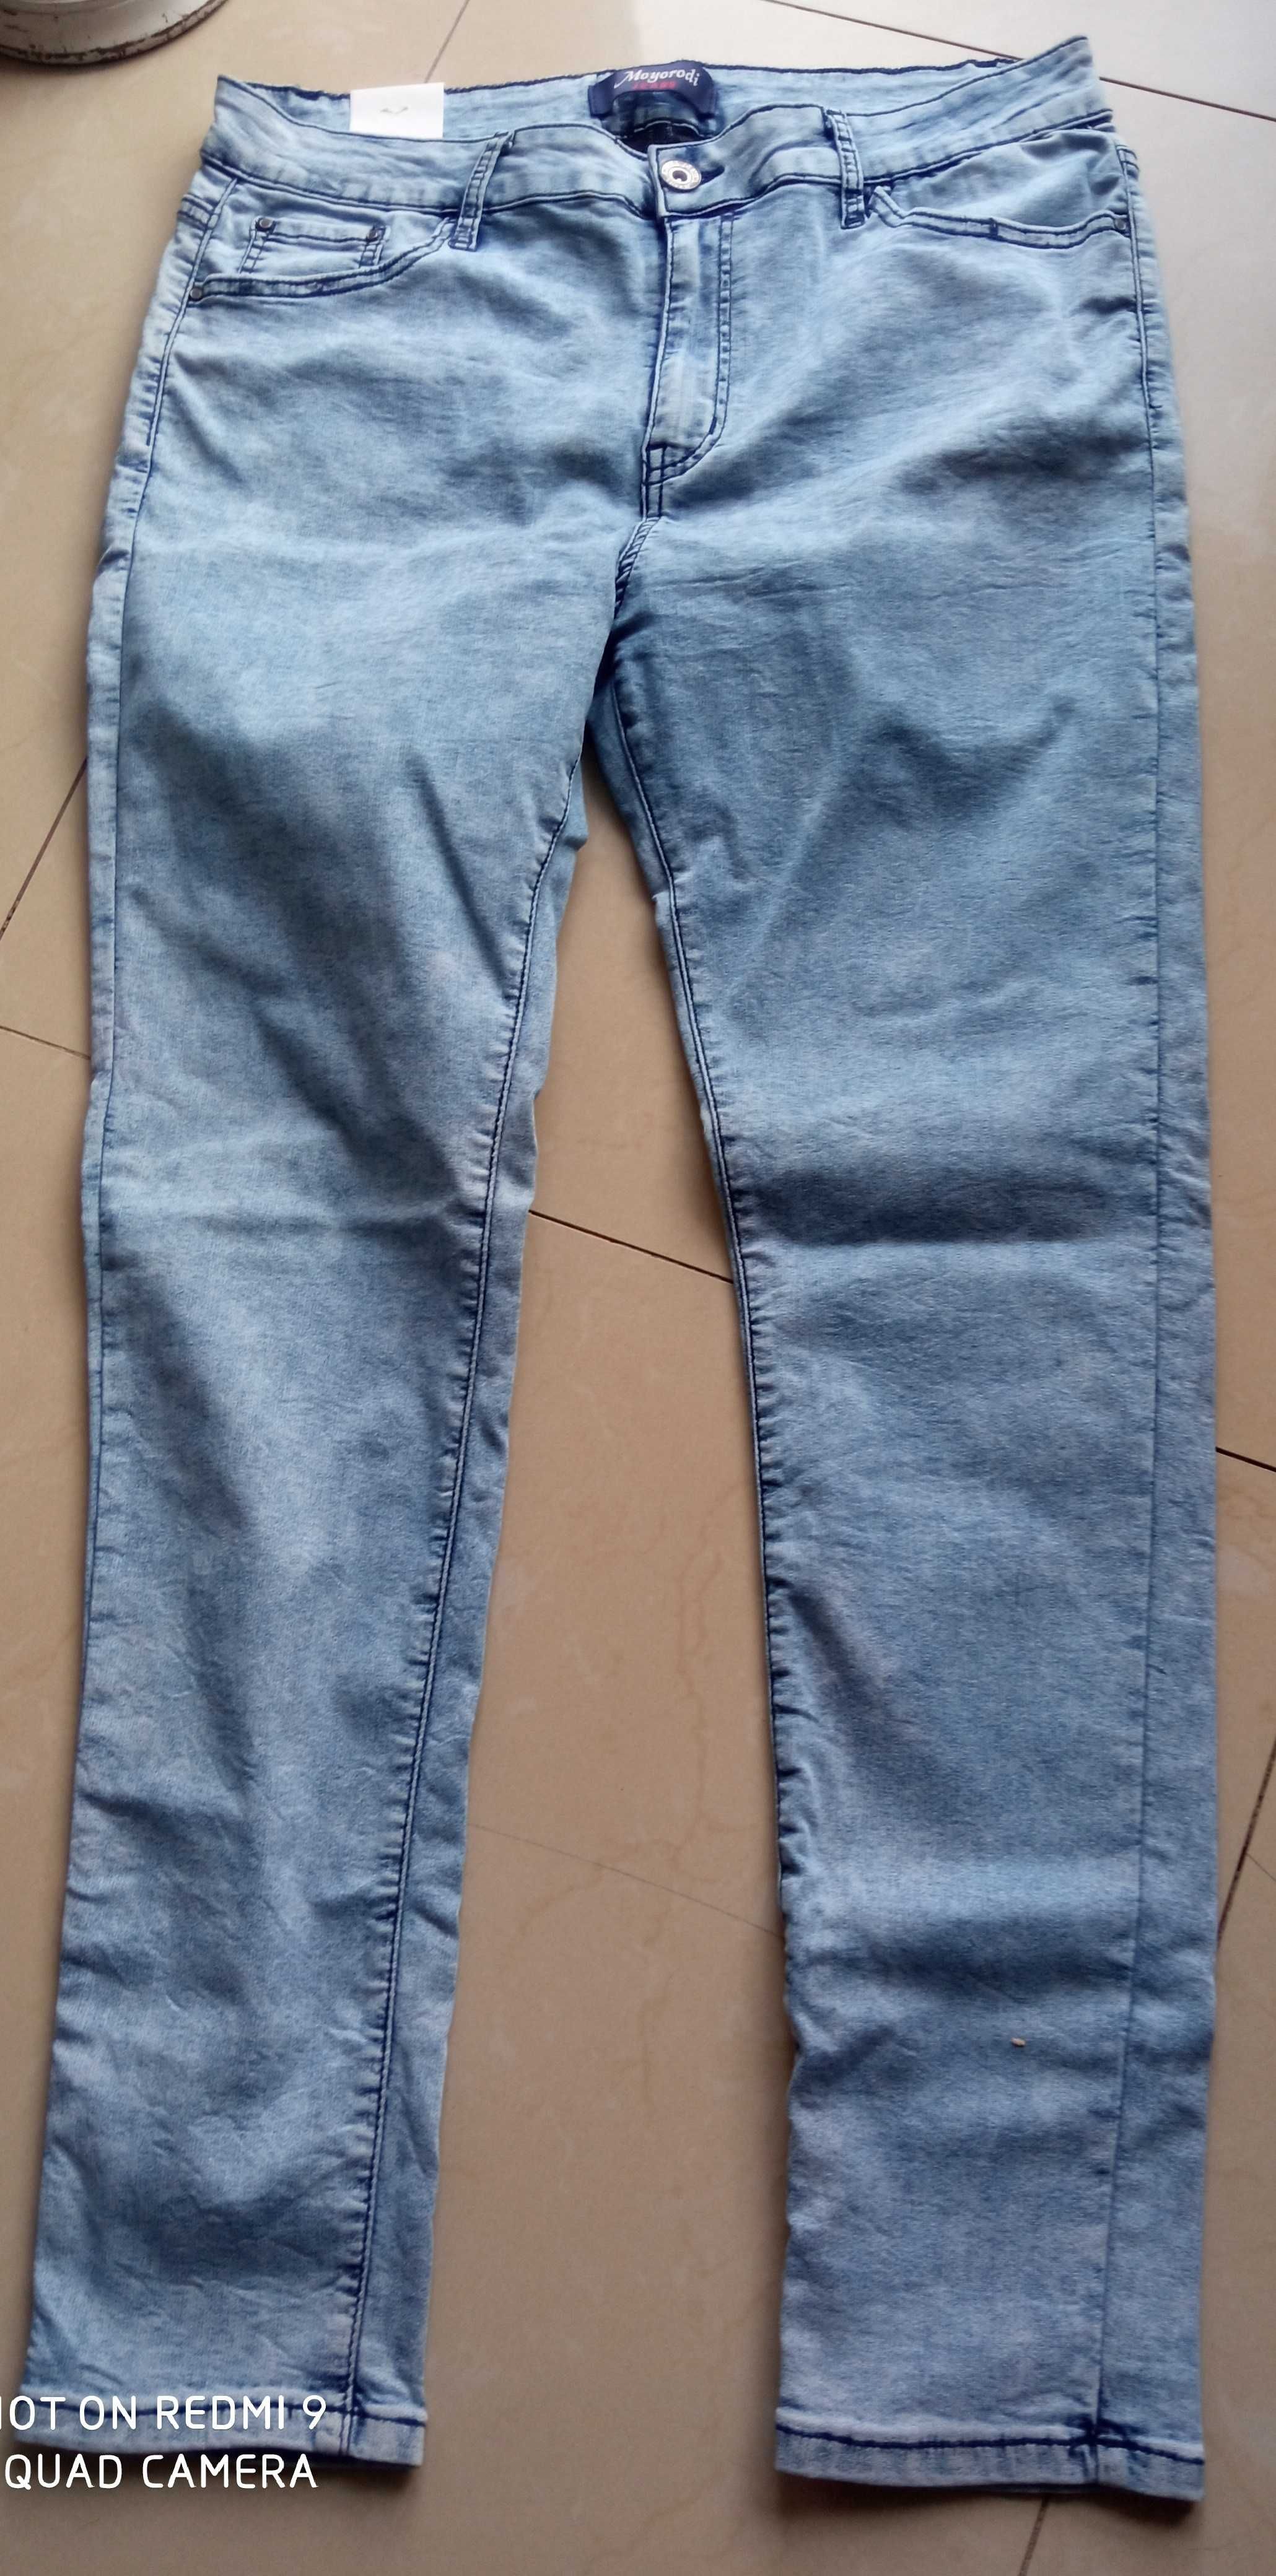 MOYORODI spodnie jasne jeansy dżinsy 88-114 cm pas 48 50 nowe z metką